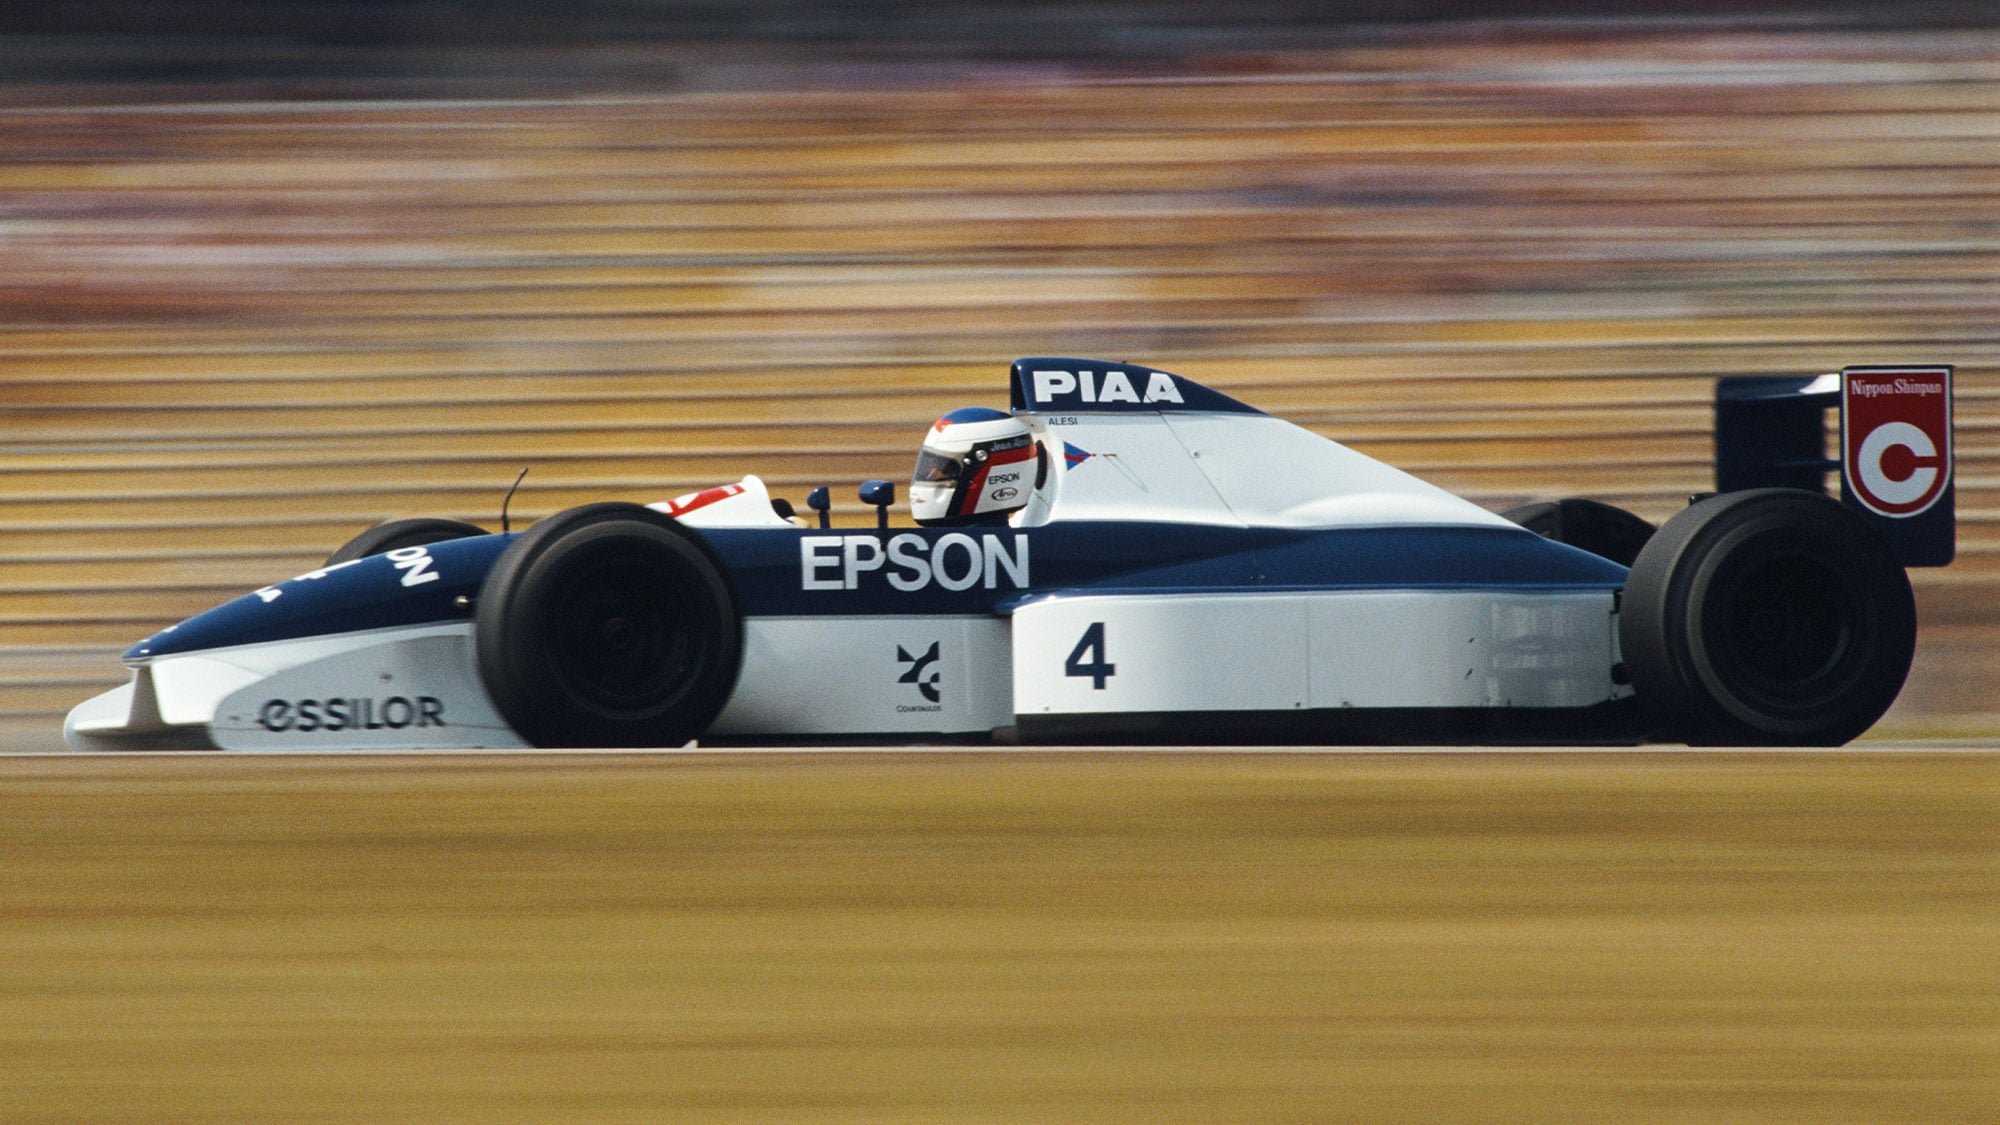 Tyrrell 019 of Jean Alesi